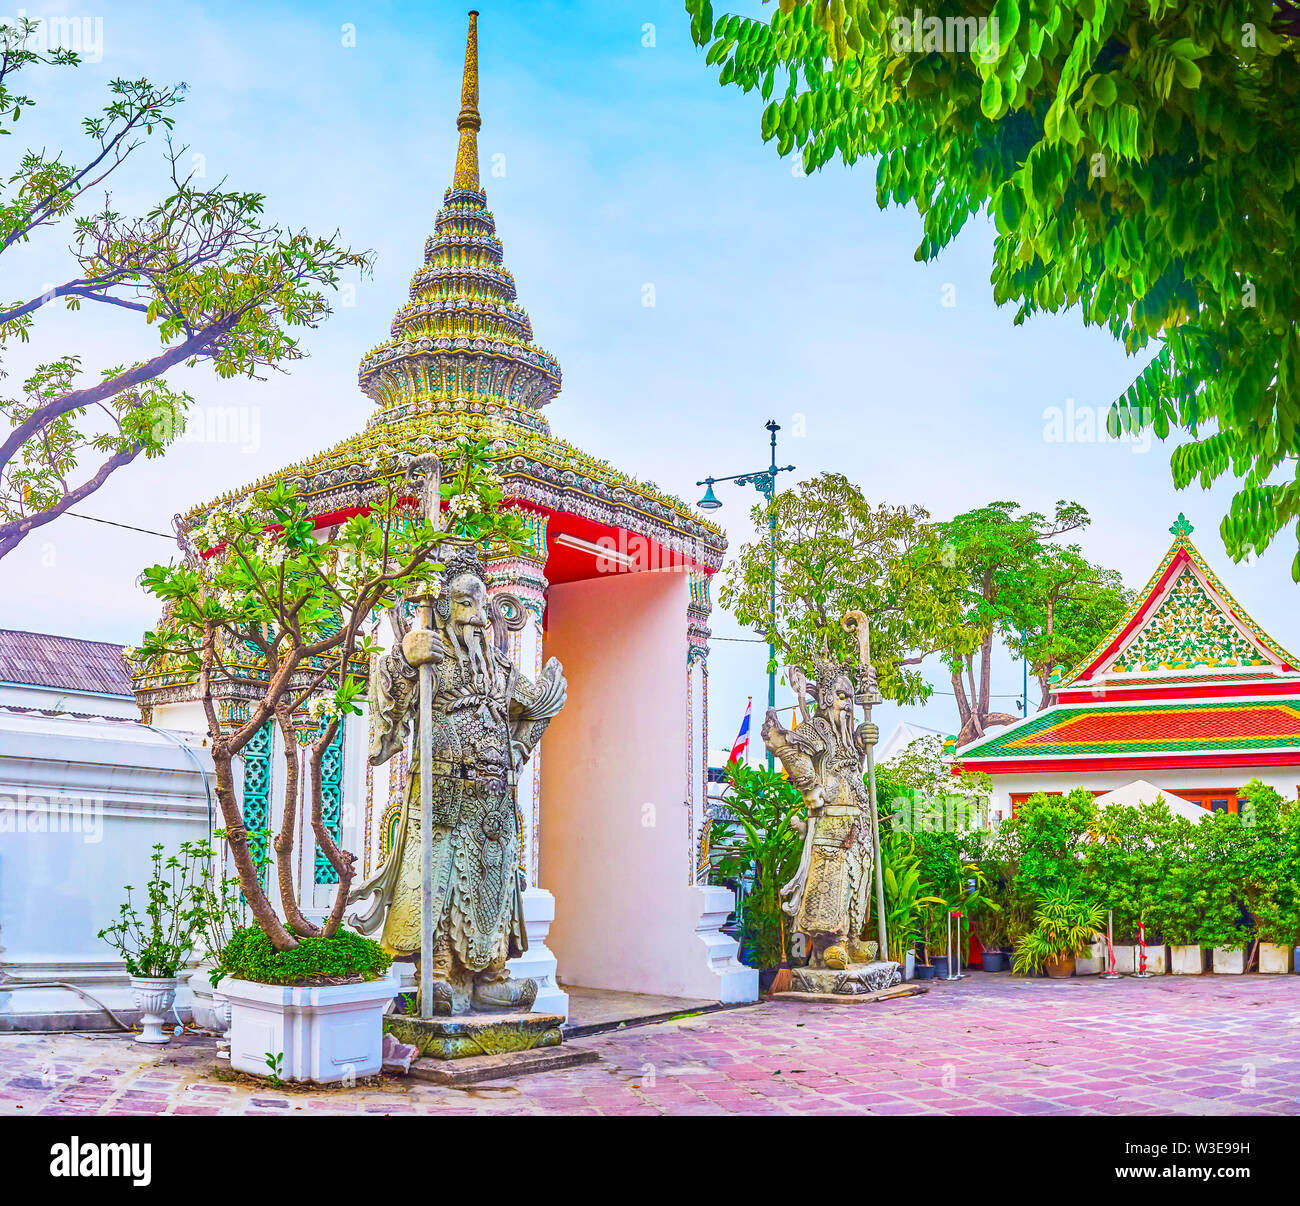 Den Toren von Wat Pho Tempel mit Fliesen- Krone mit Turm und zwei chinesische Wächter, Bangkok, Thailand Stockfoto